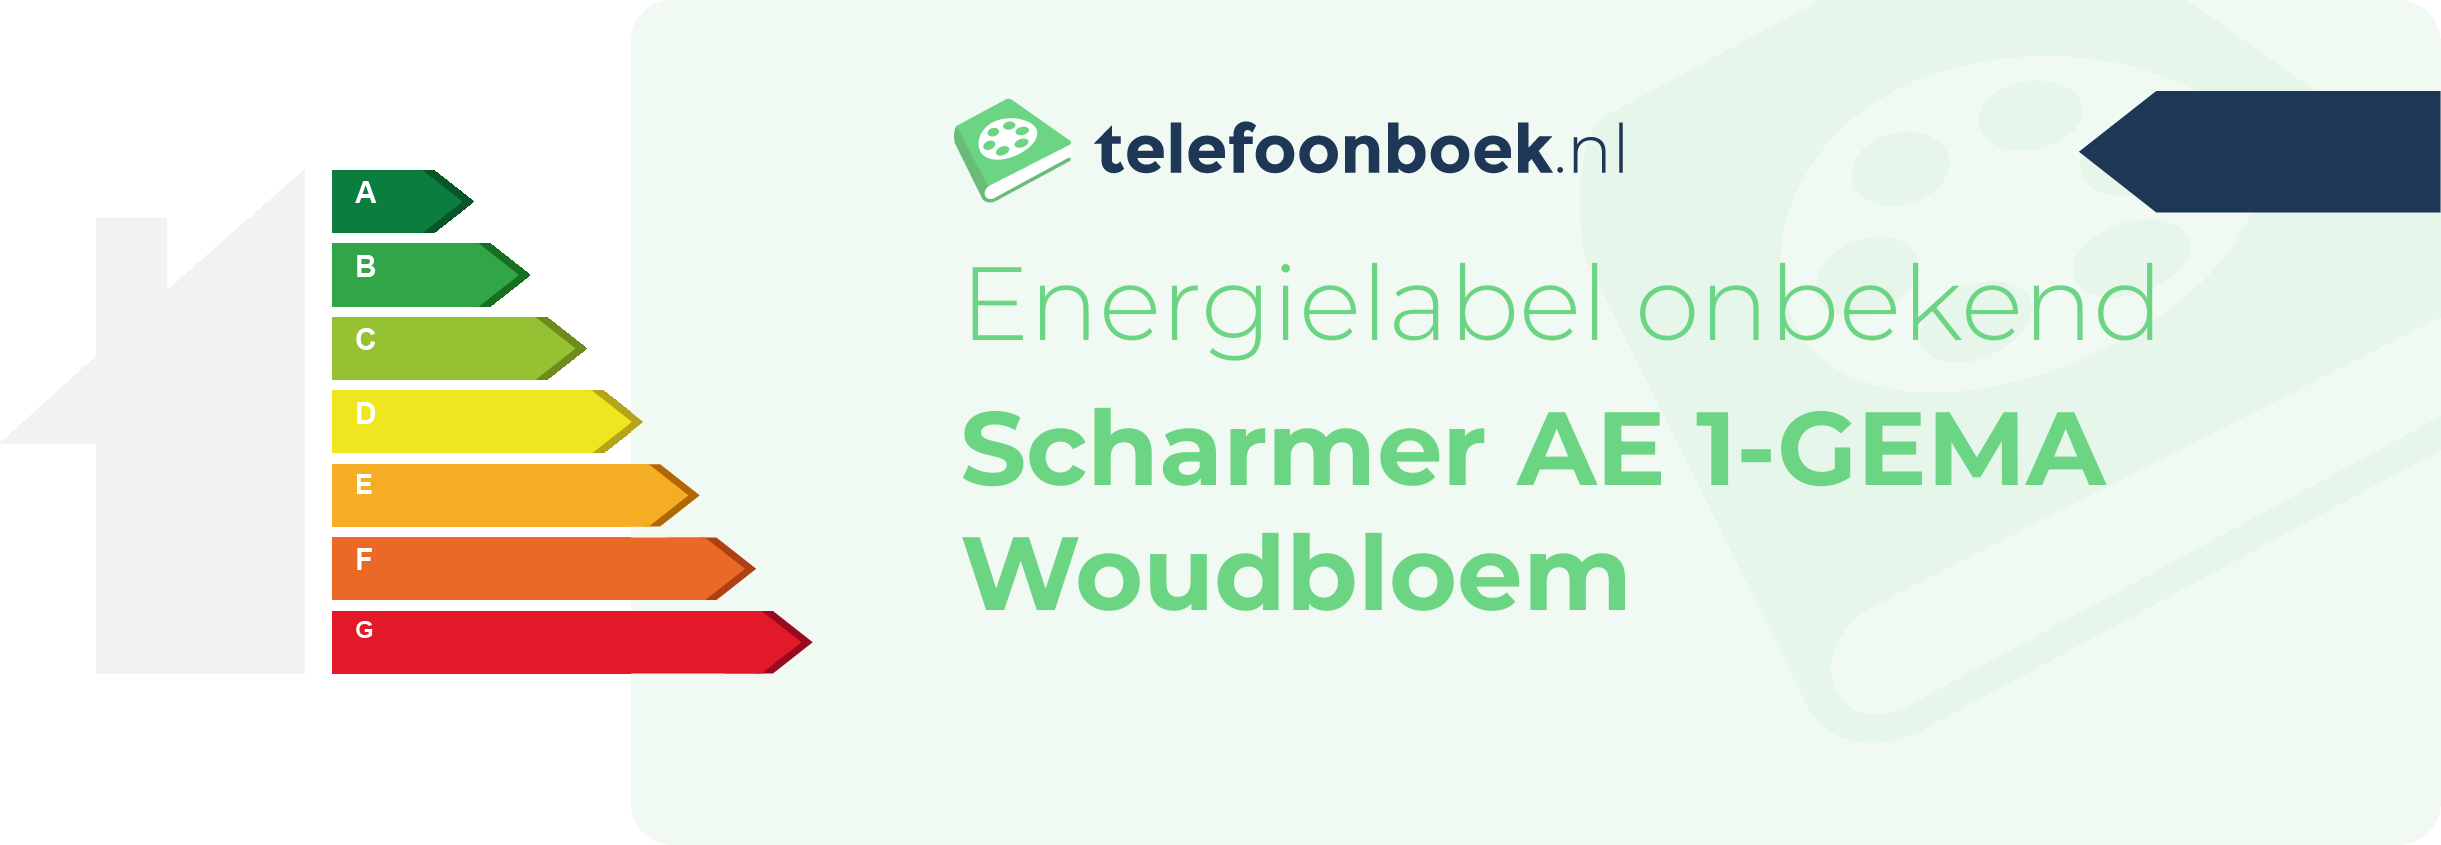 Energielabel Scharmer AE 1-GEMA Woudbloem